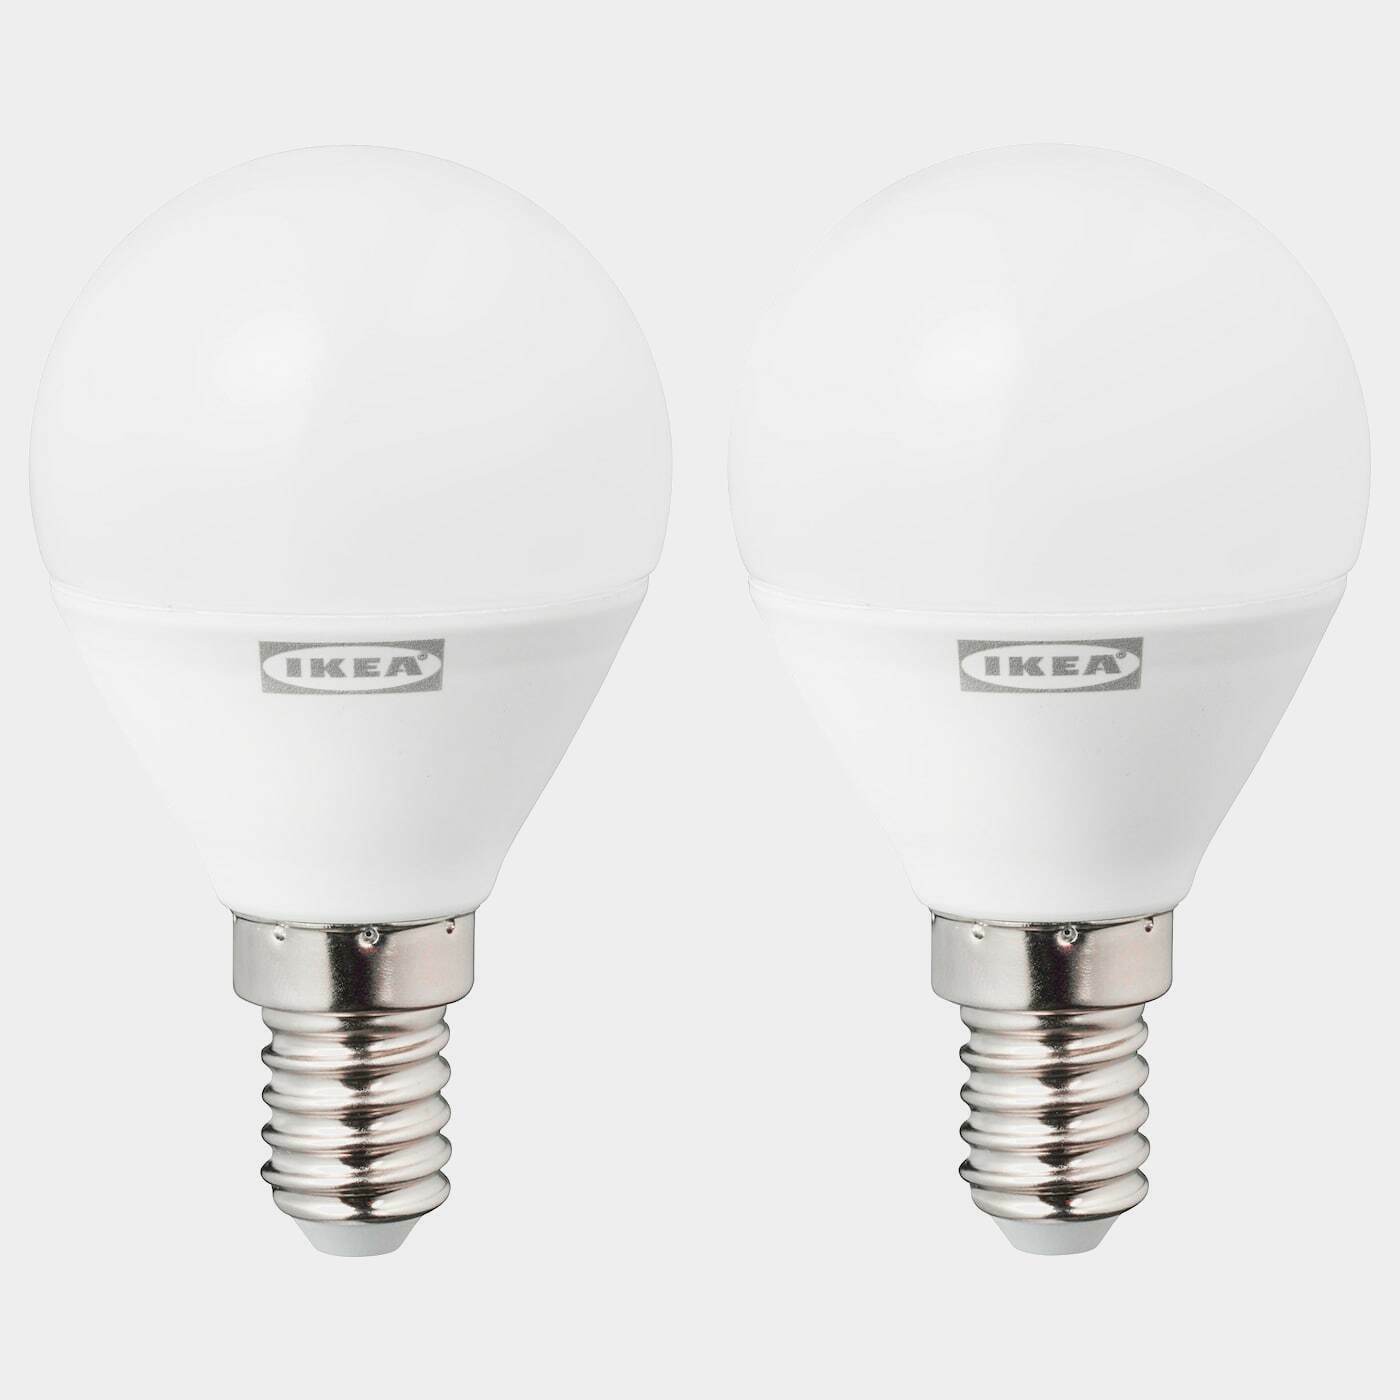 RYET LED-Leuchtmittel E14 470 lm  -  - Beleuchtung Ideen für dein Zuhause von Home Trends. Beleuchtung Trends von Social Media Influencer für dein Skandi Zuhause.